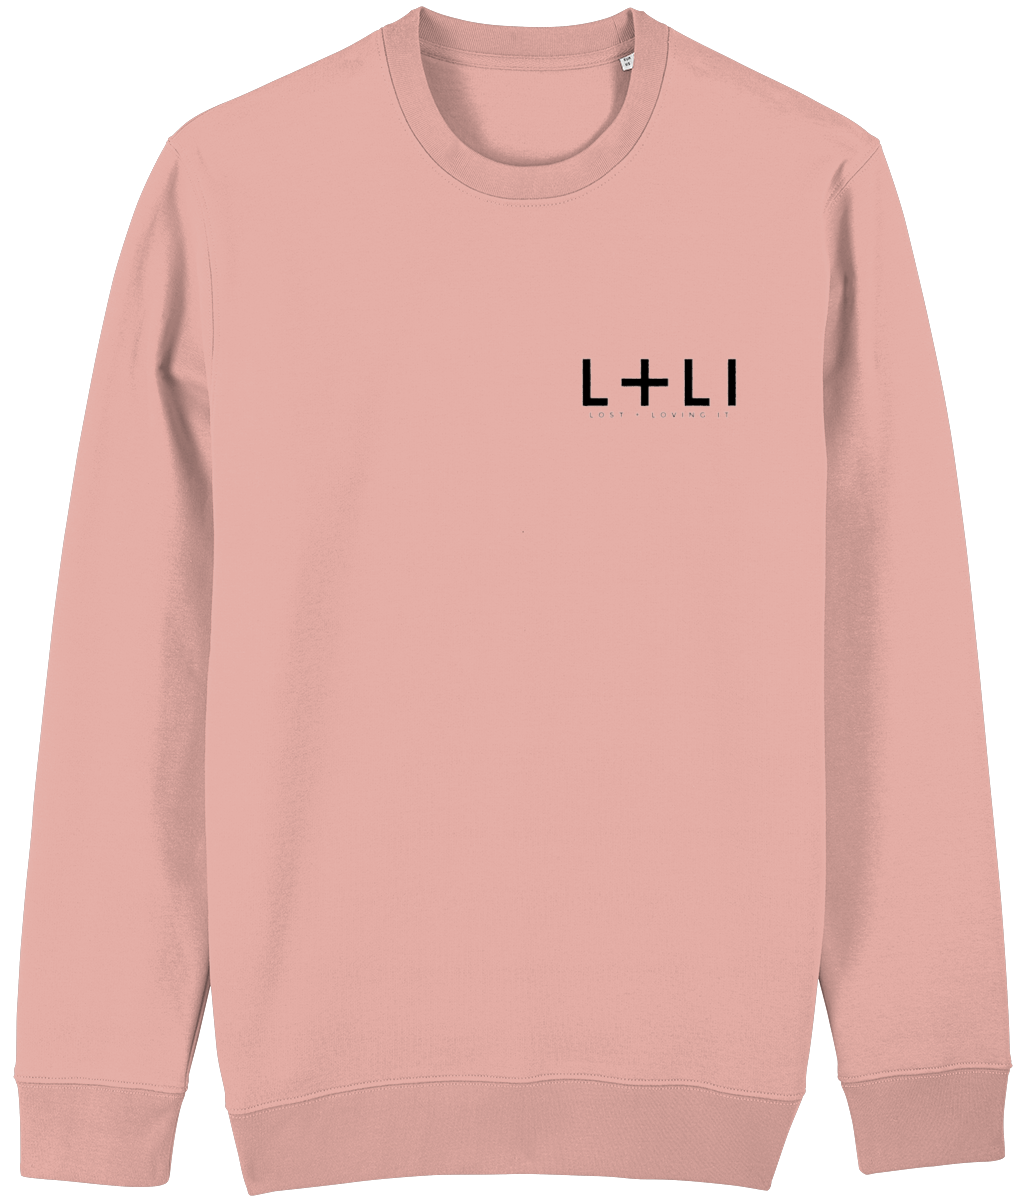 L+LI Crew Neck Sweatshirt 2.0